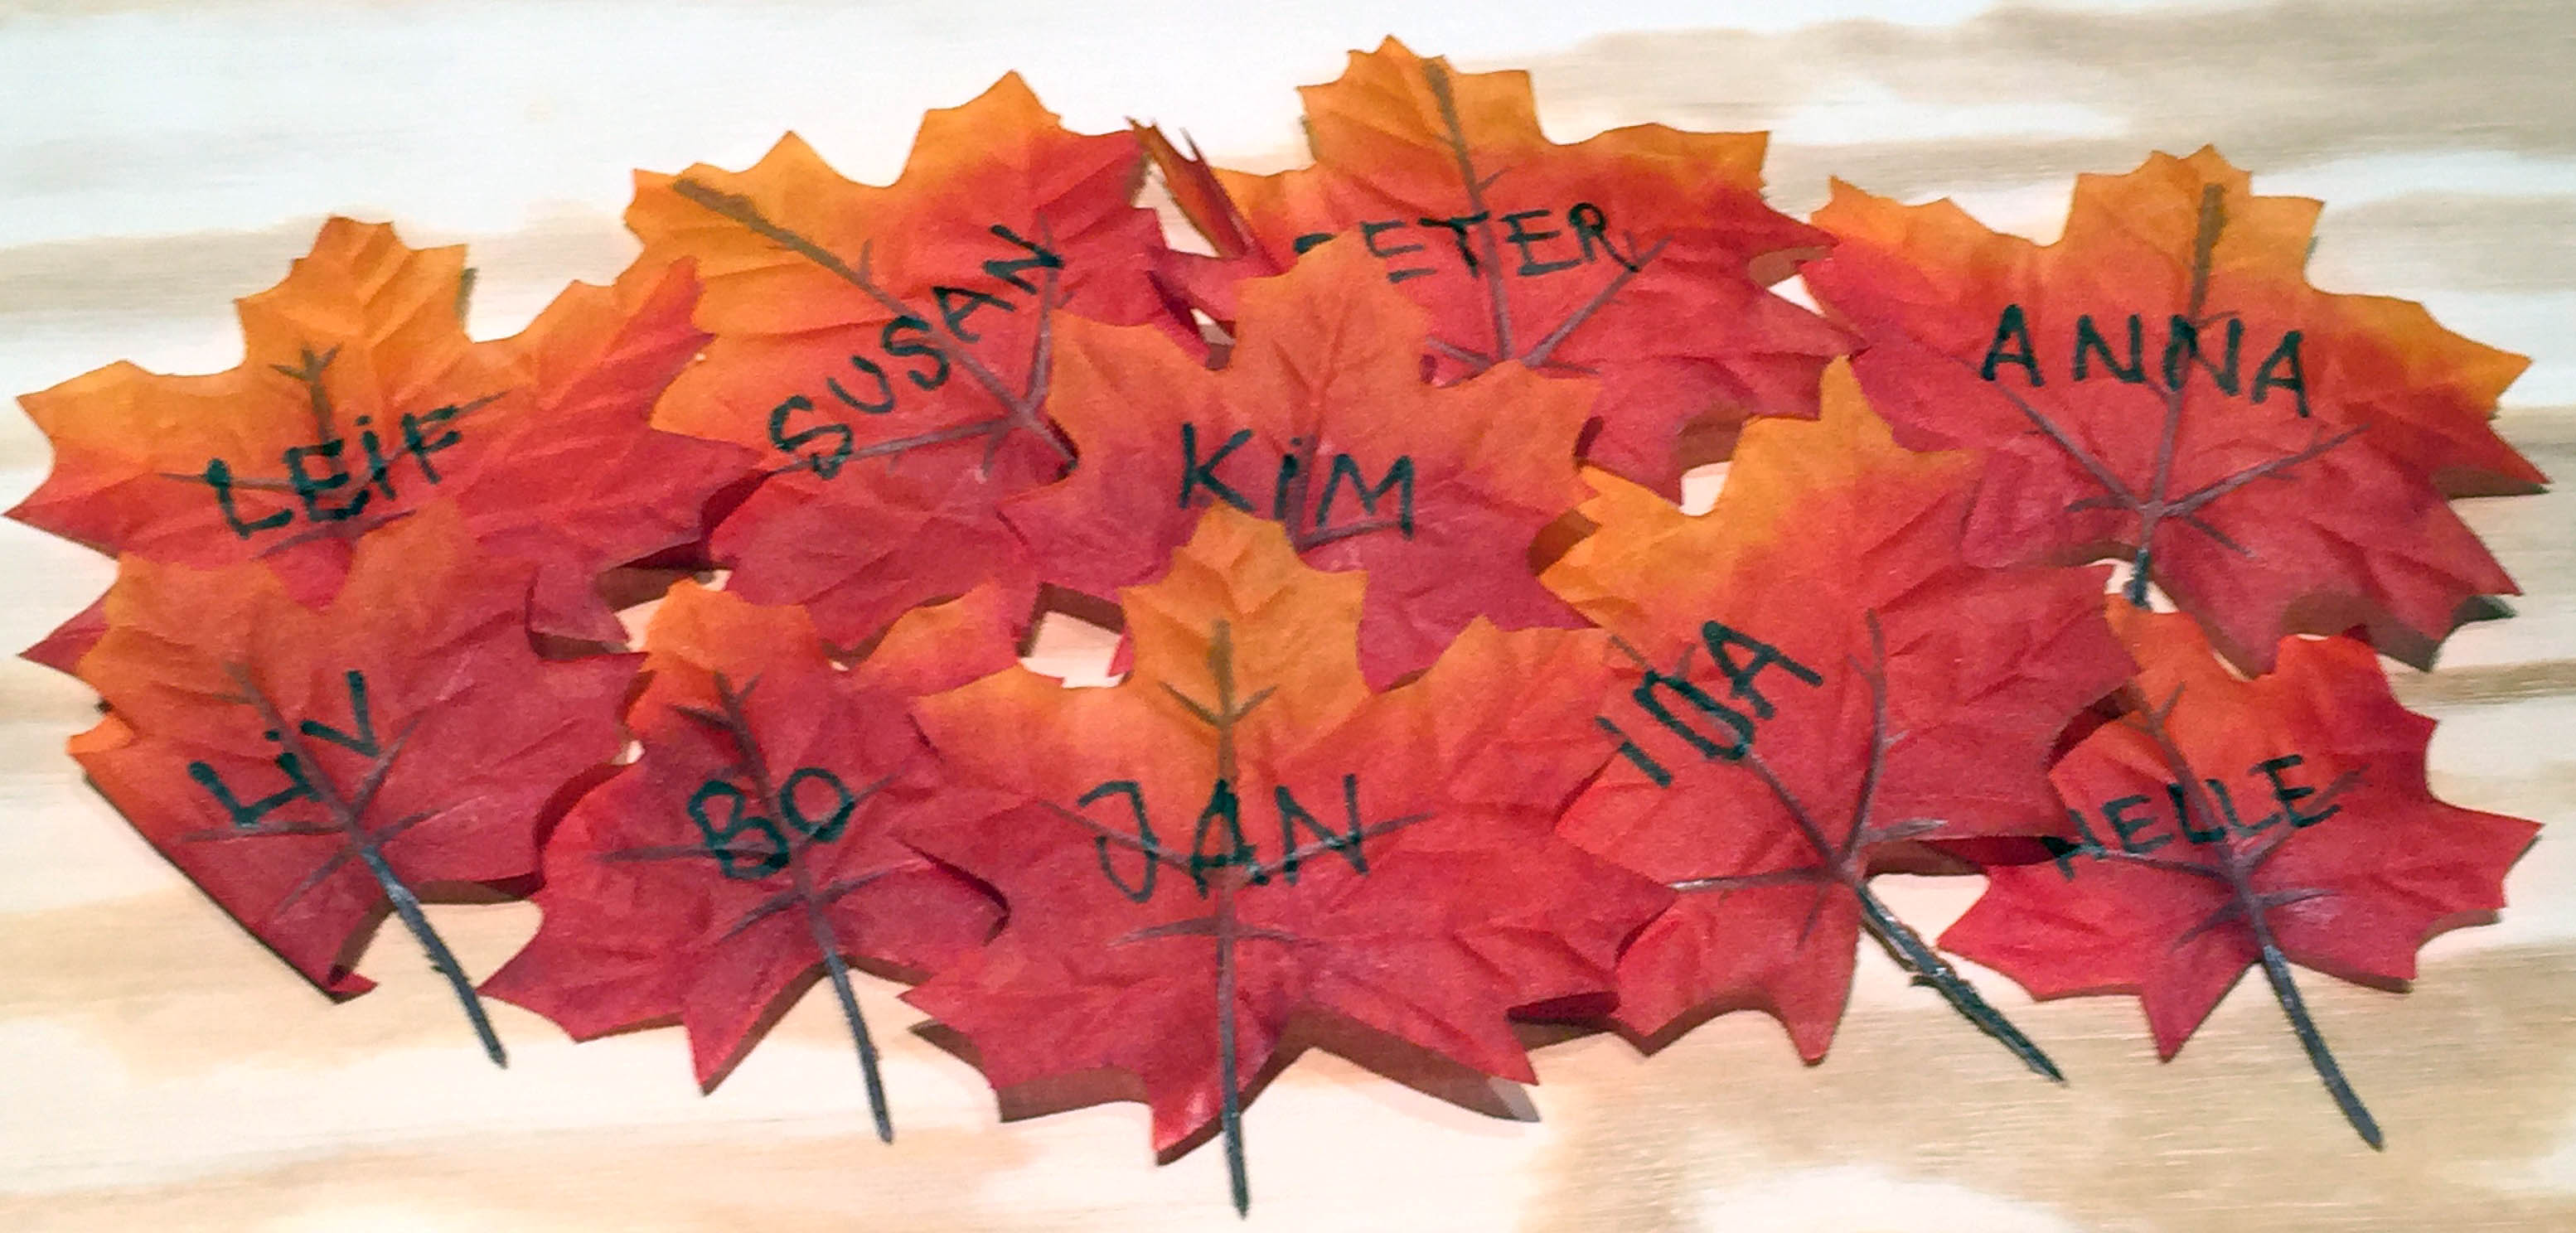 Efterårsblade brugt som bordkort